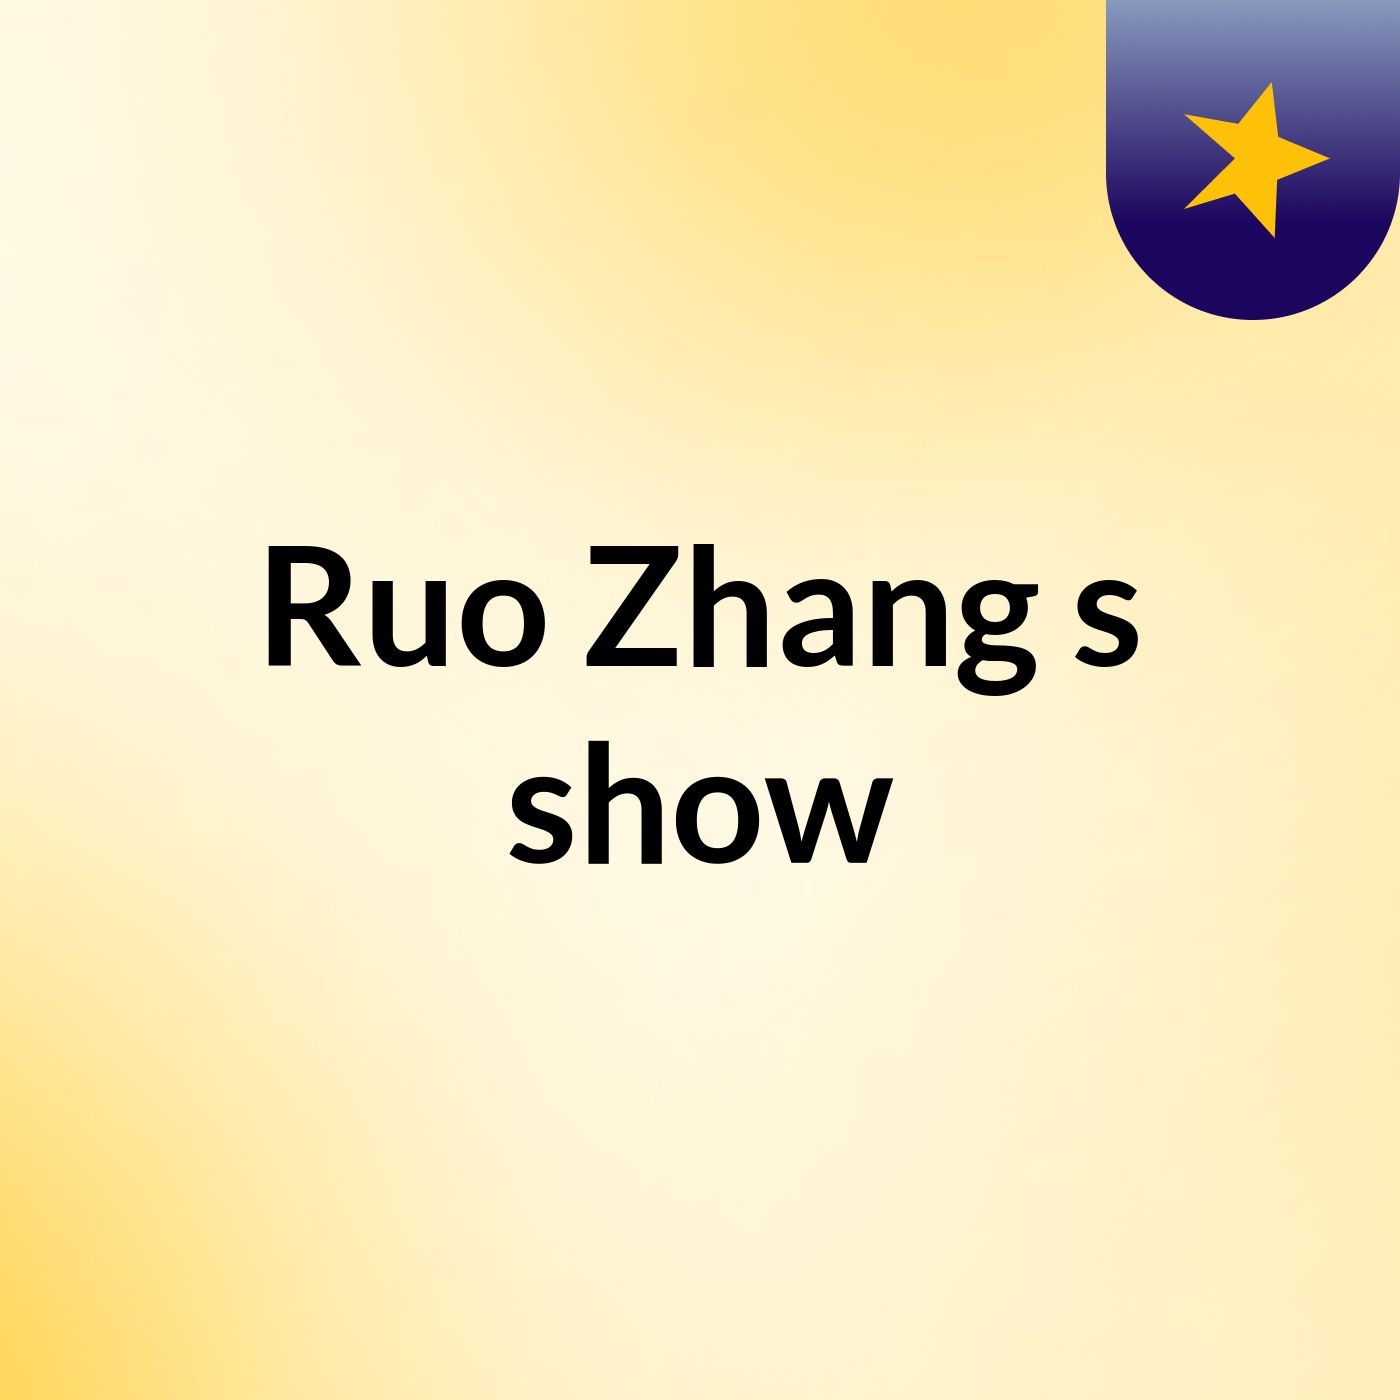 Ruo Zhang's show